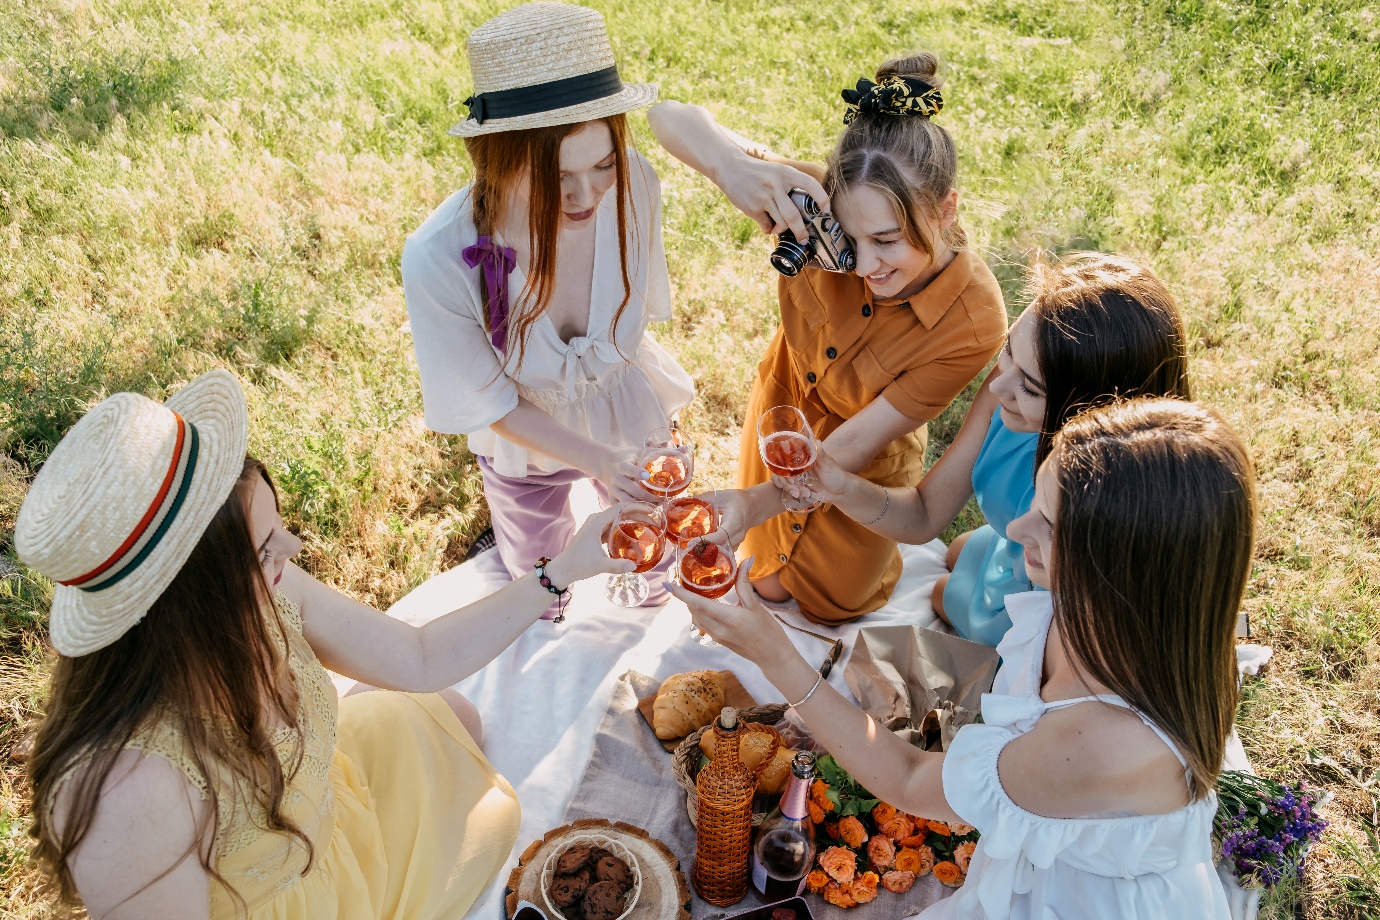 Grupa kobiet na pikniku wnosi toast i robi sobie zdjęcie